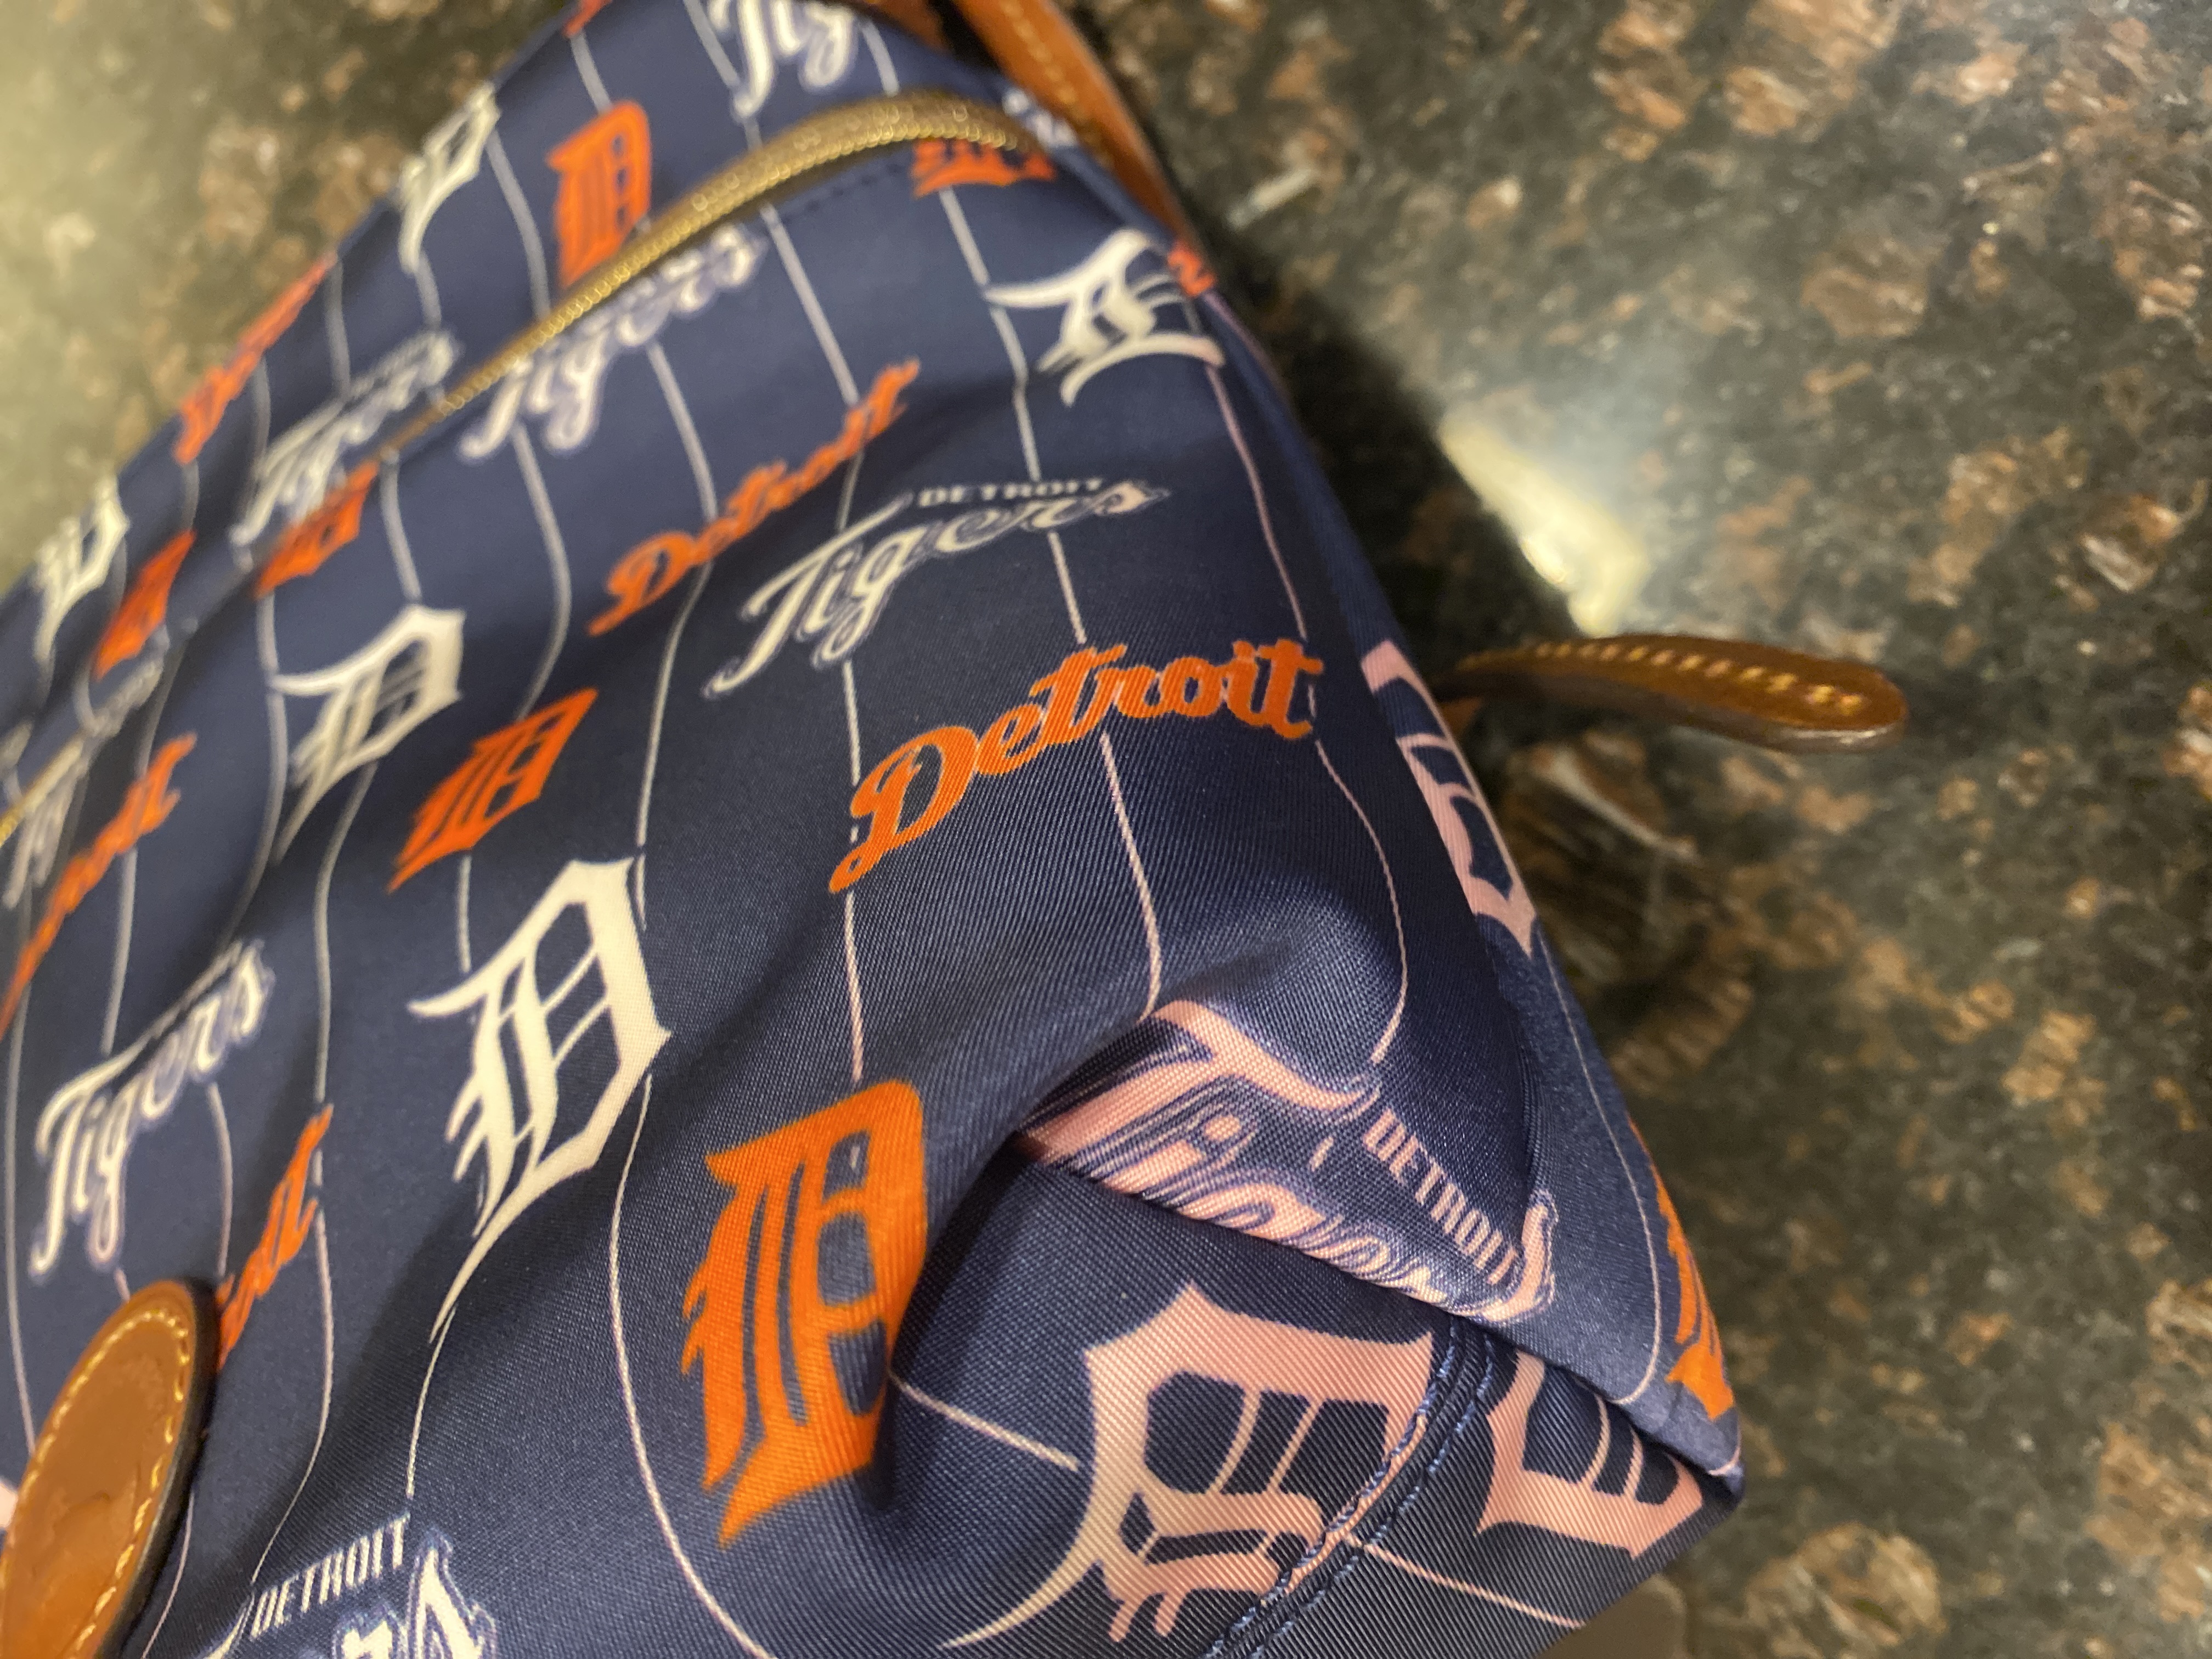 Dooney & Bourke MLB Los Angeles Dodgers Large Sac Shoulder Bag